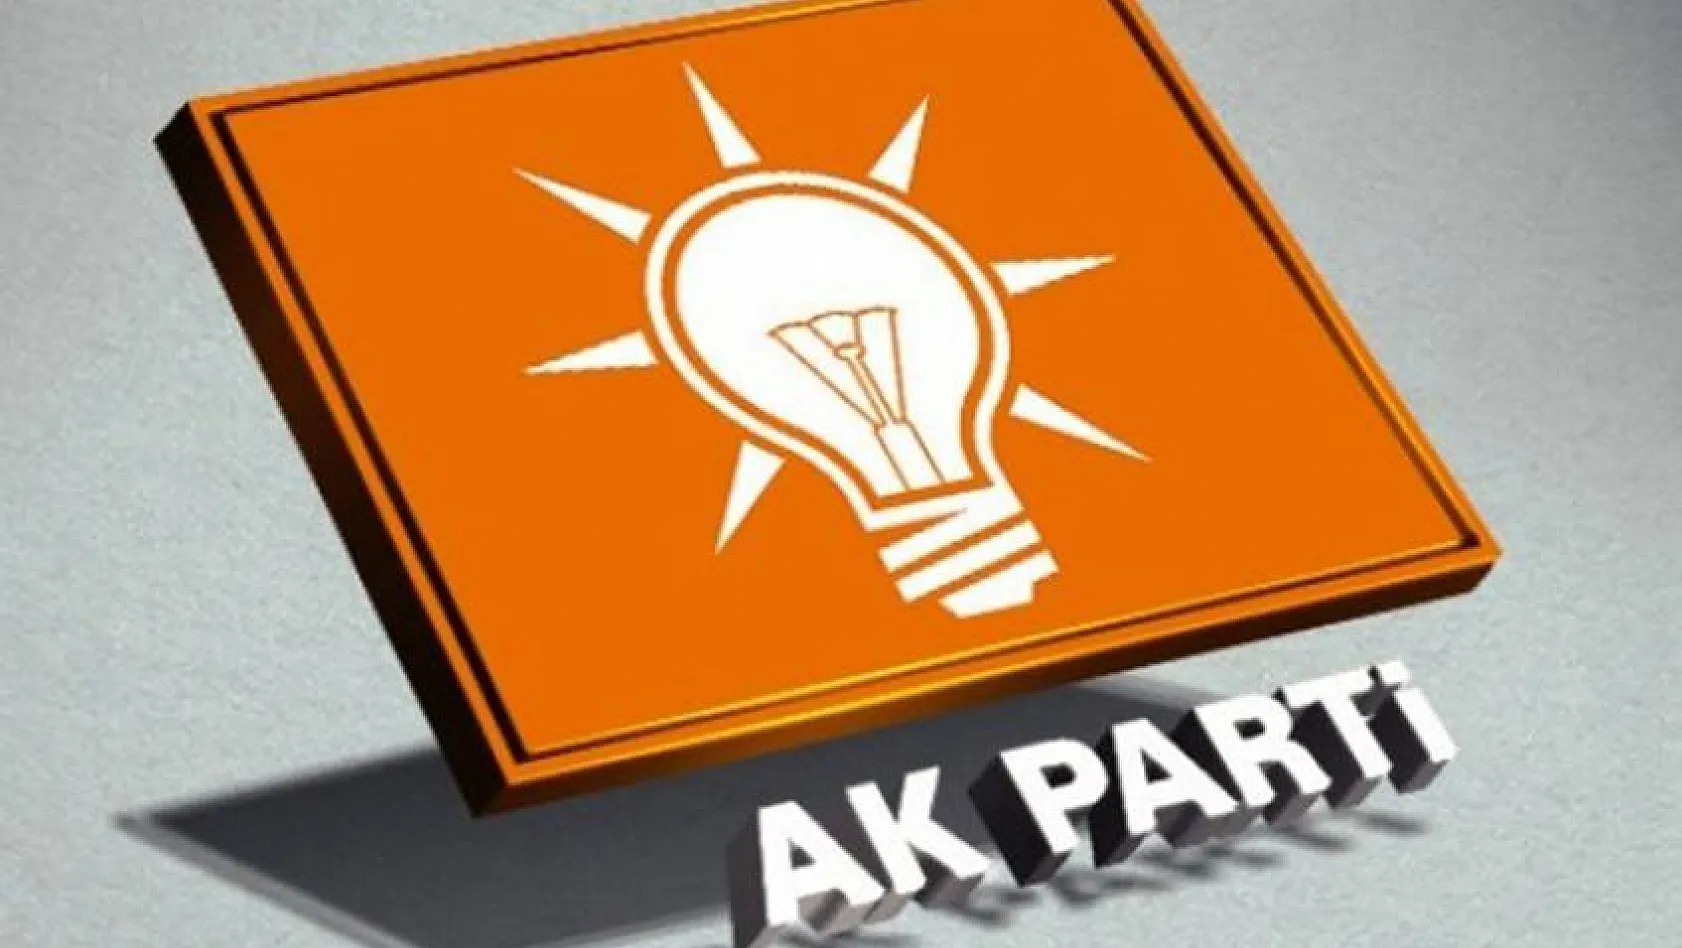 AK Parti'de şok istifa!